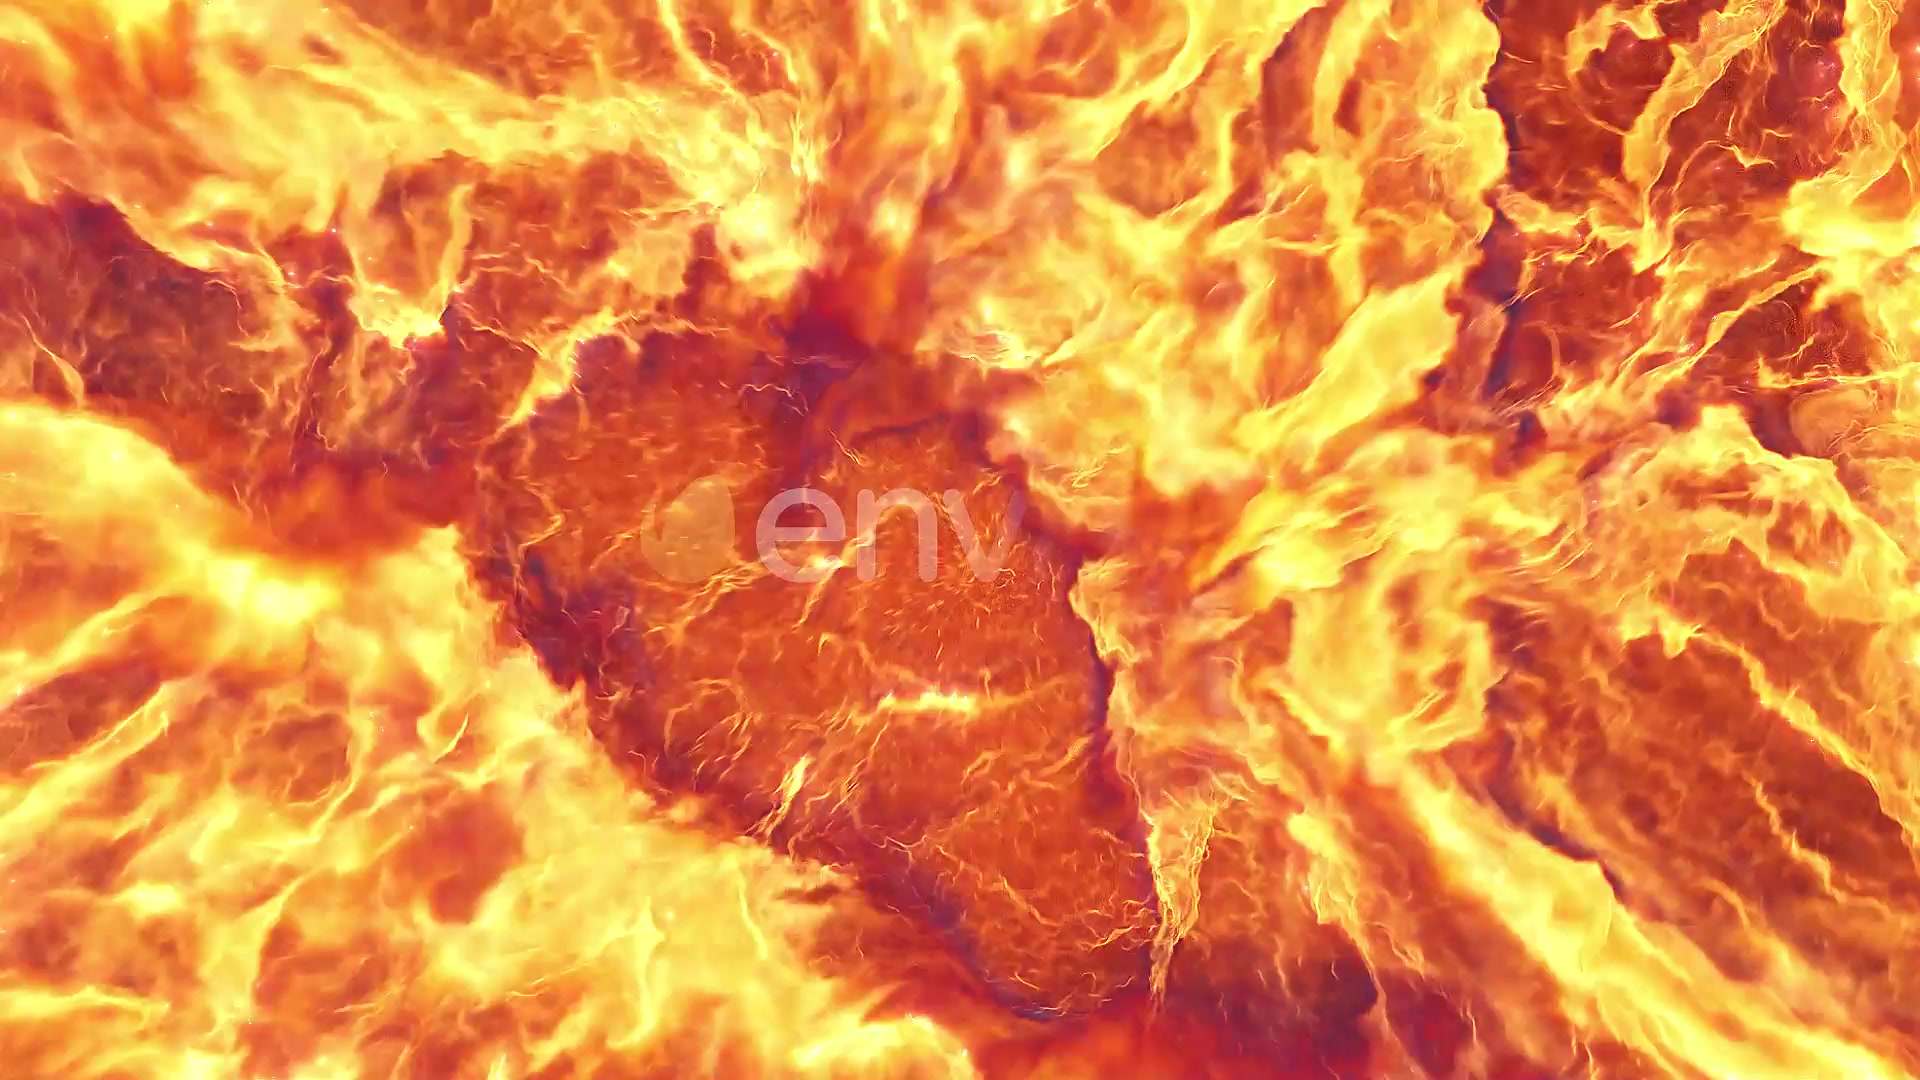 Fire Explosion Logo Reveal II Premire Pro Videohive 37550592 Premiere Pro Image 4